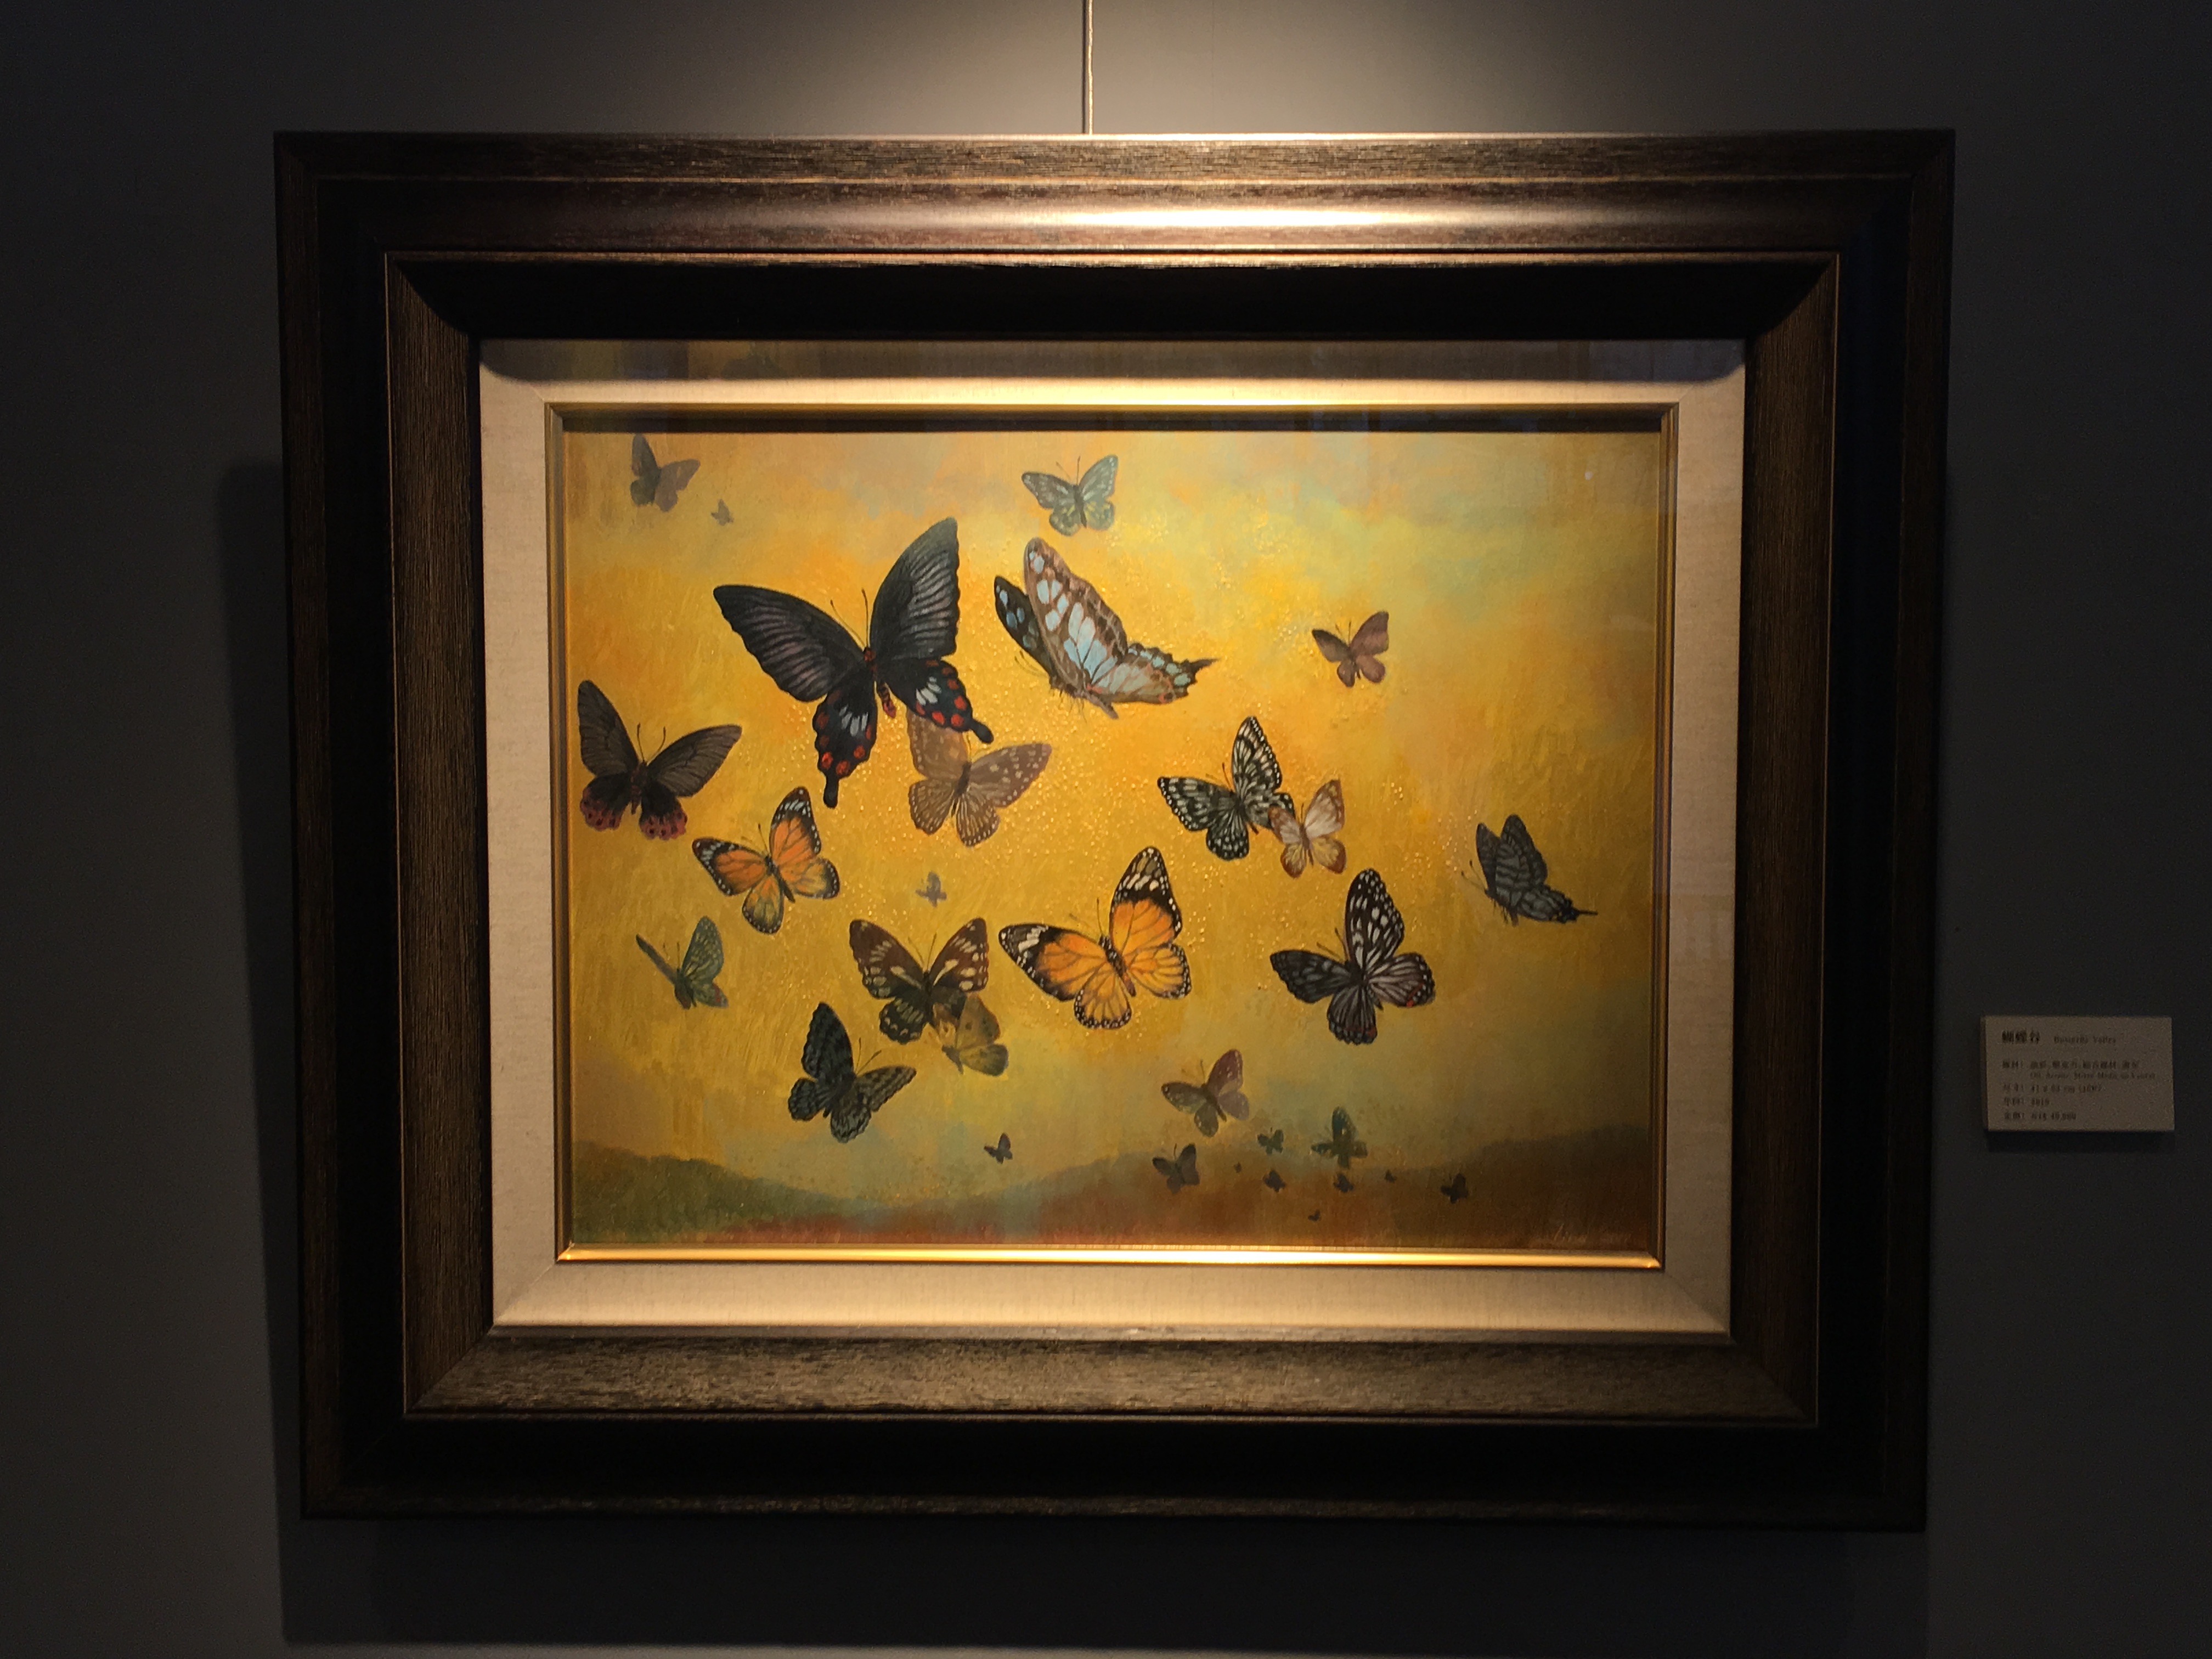 劉子平，《蝴蝶谷》，41 x 53 cm，油彩、壓克力、綜合媒材、畫布，2019。